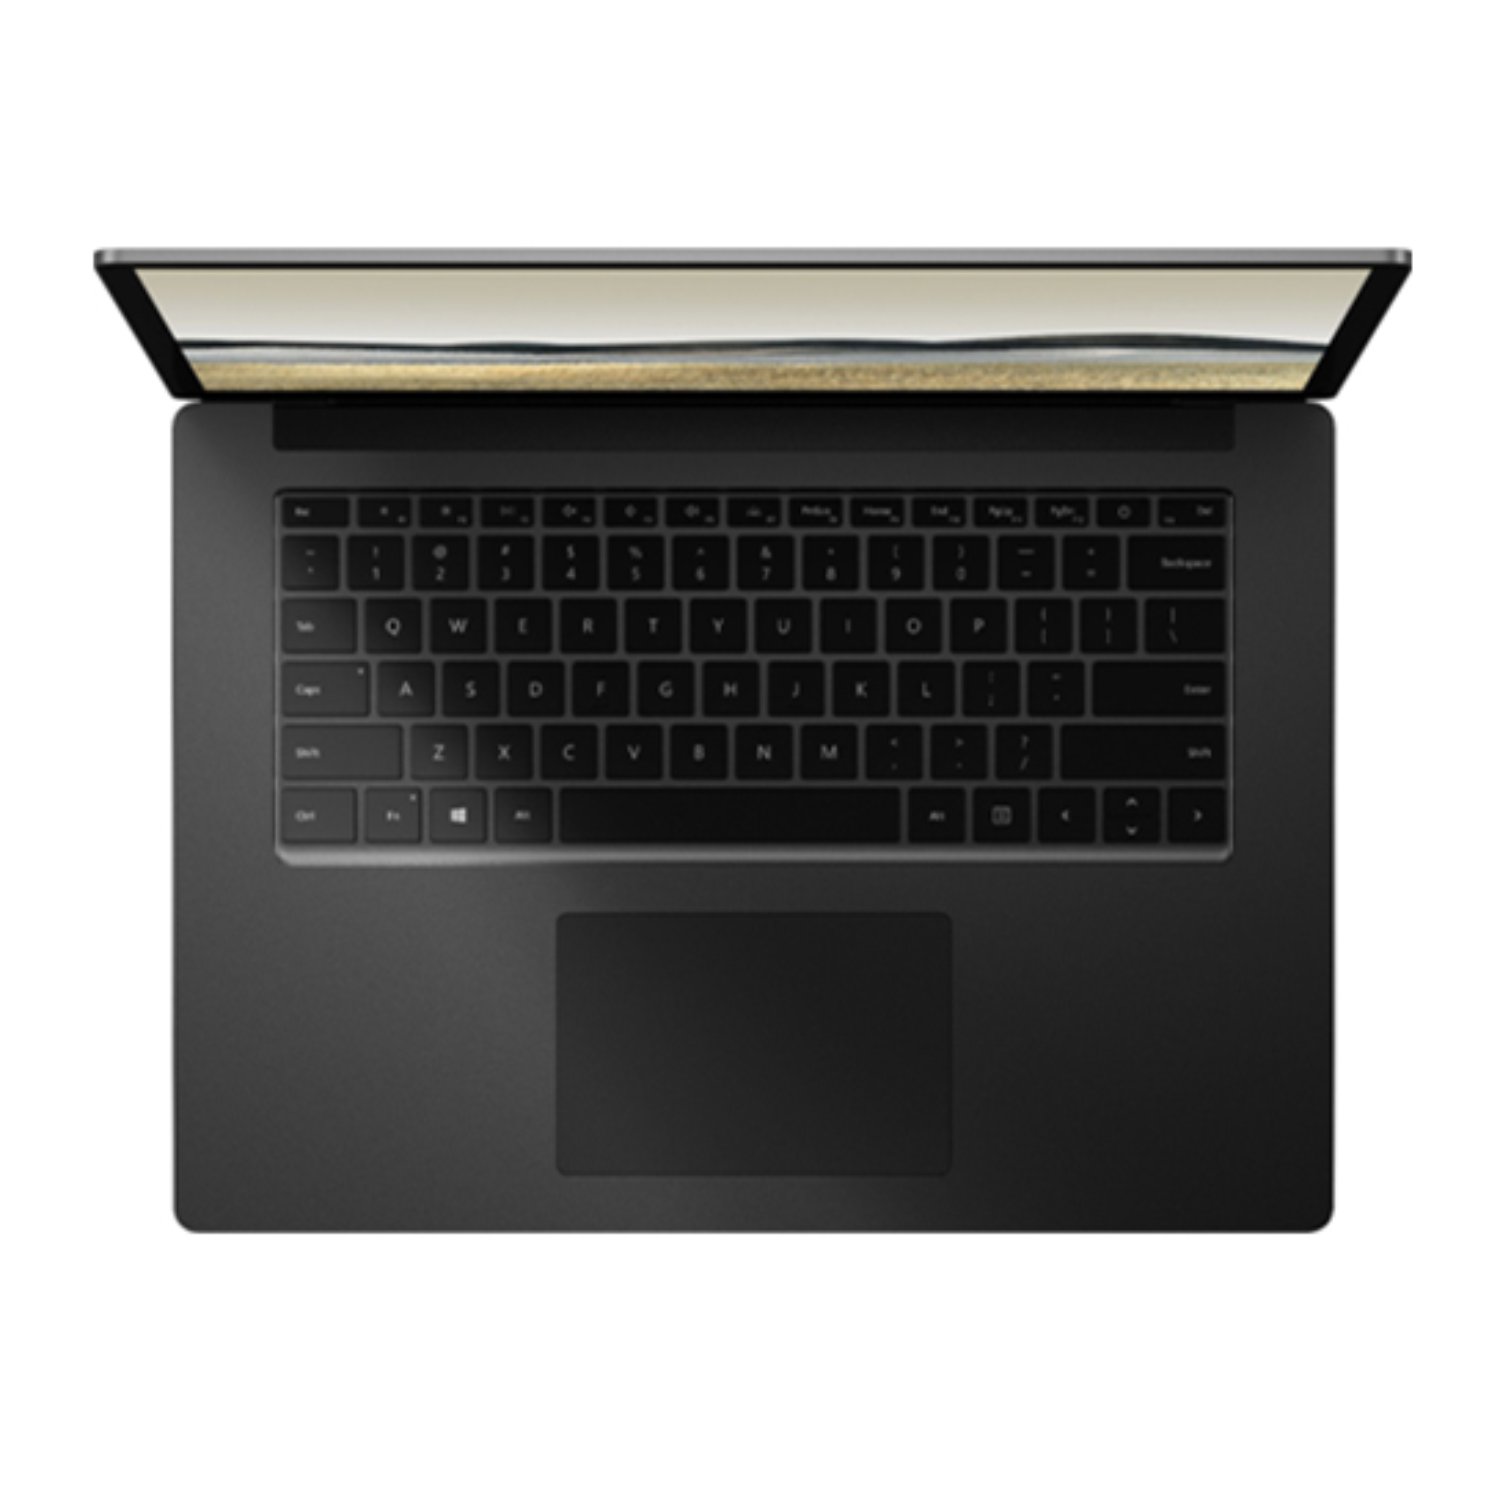 سرفیس لپ تاپ 4 مایکروسافت 15 اینچ  Core i7 - 8GB/256GB 